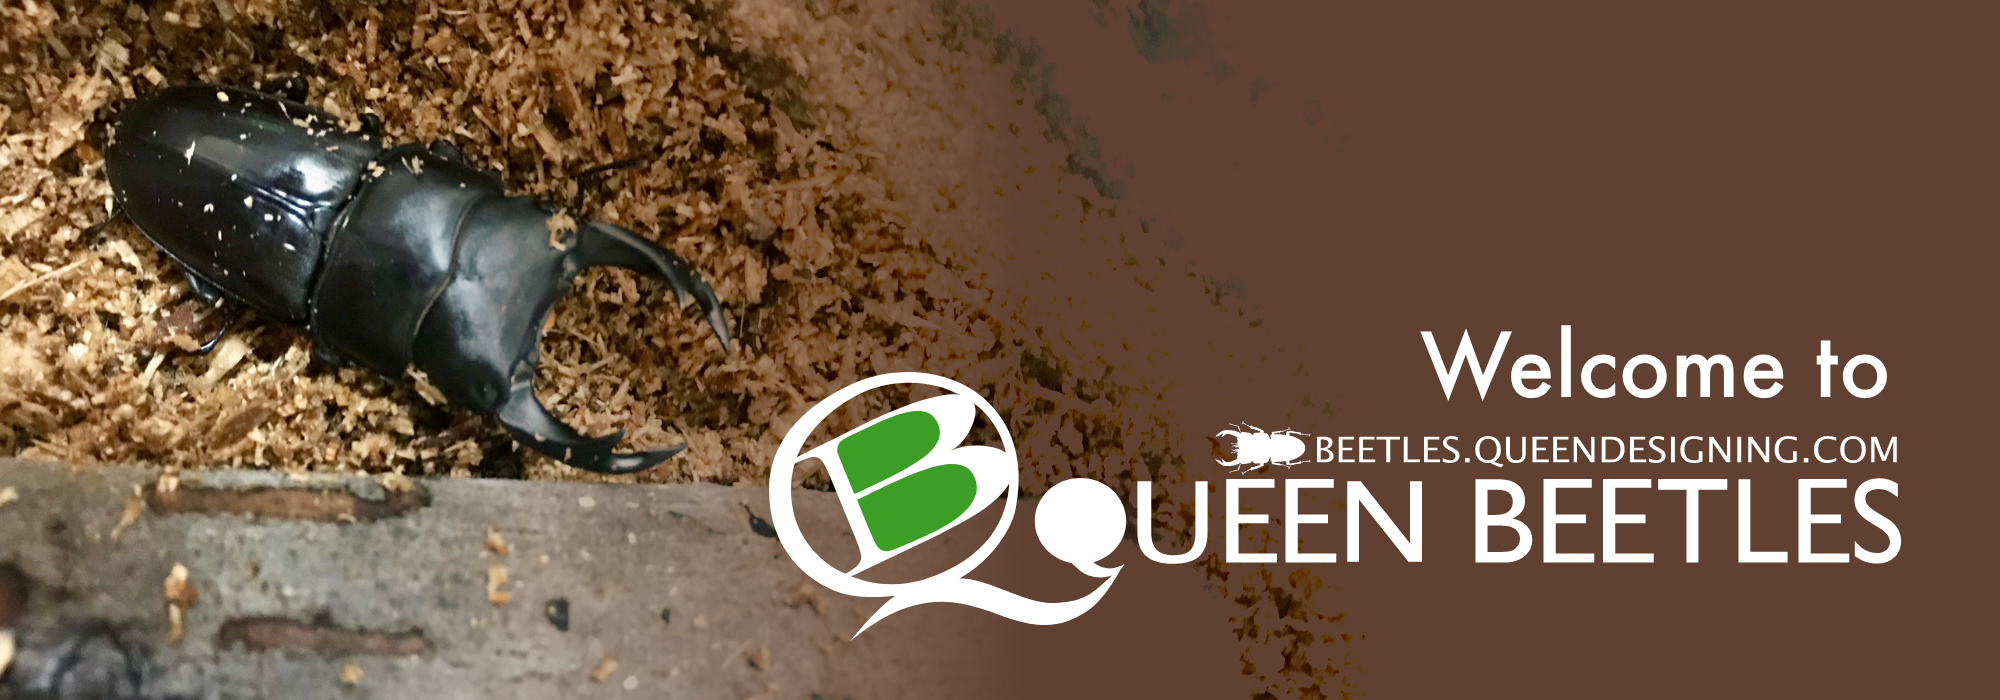 Welcome to Queen Beetles